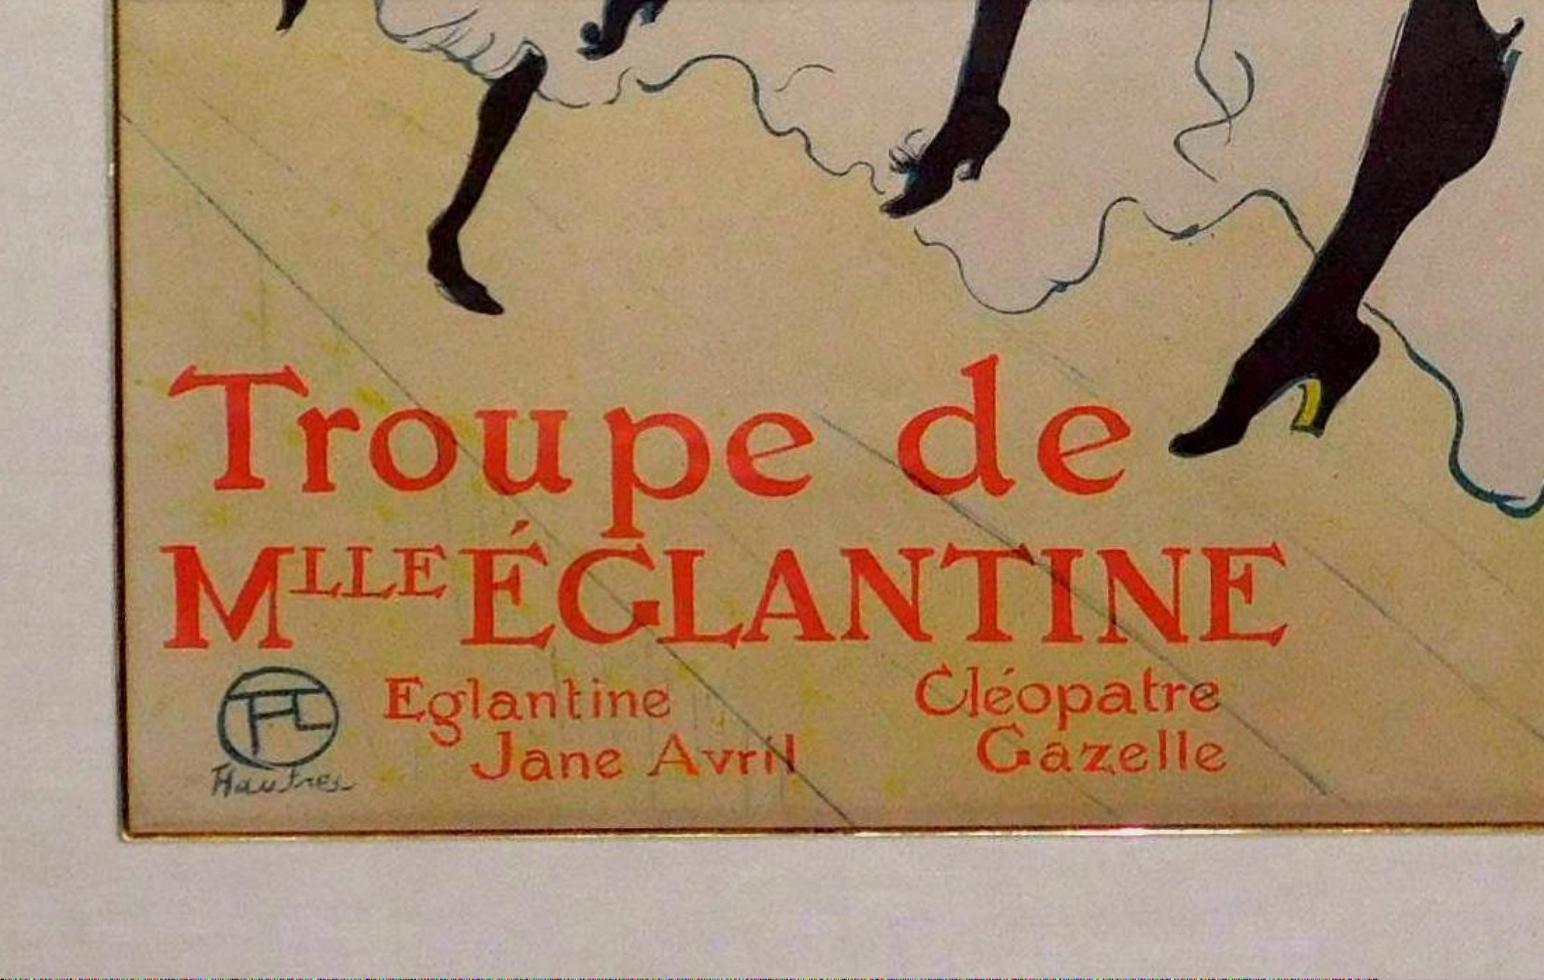 Paper Toulouse-Lautrec Color Lithograph, 1896 - La Troupe de Mademoiselle Eglantine For Sale